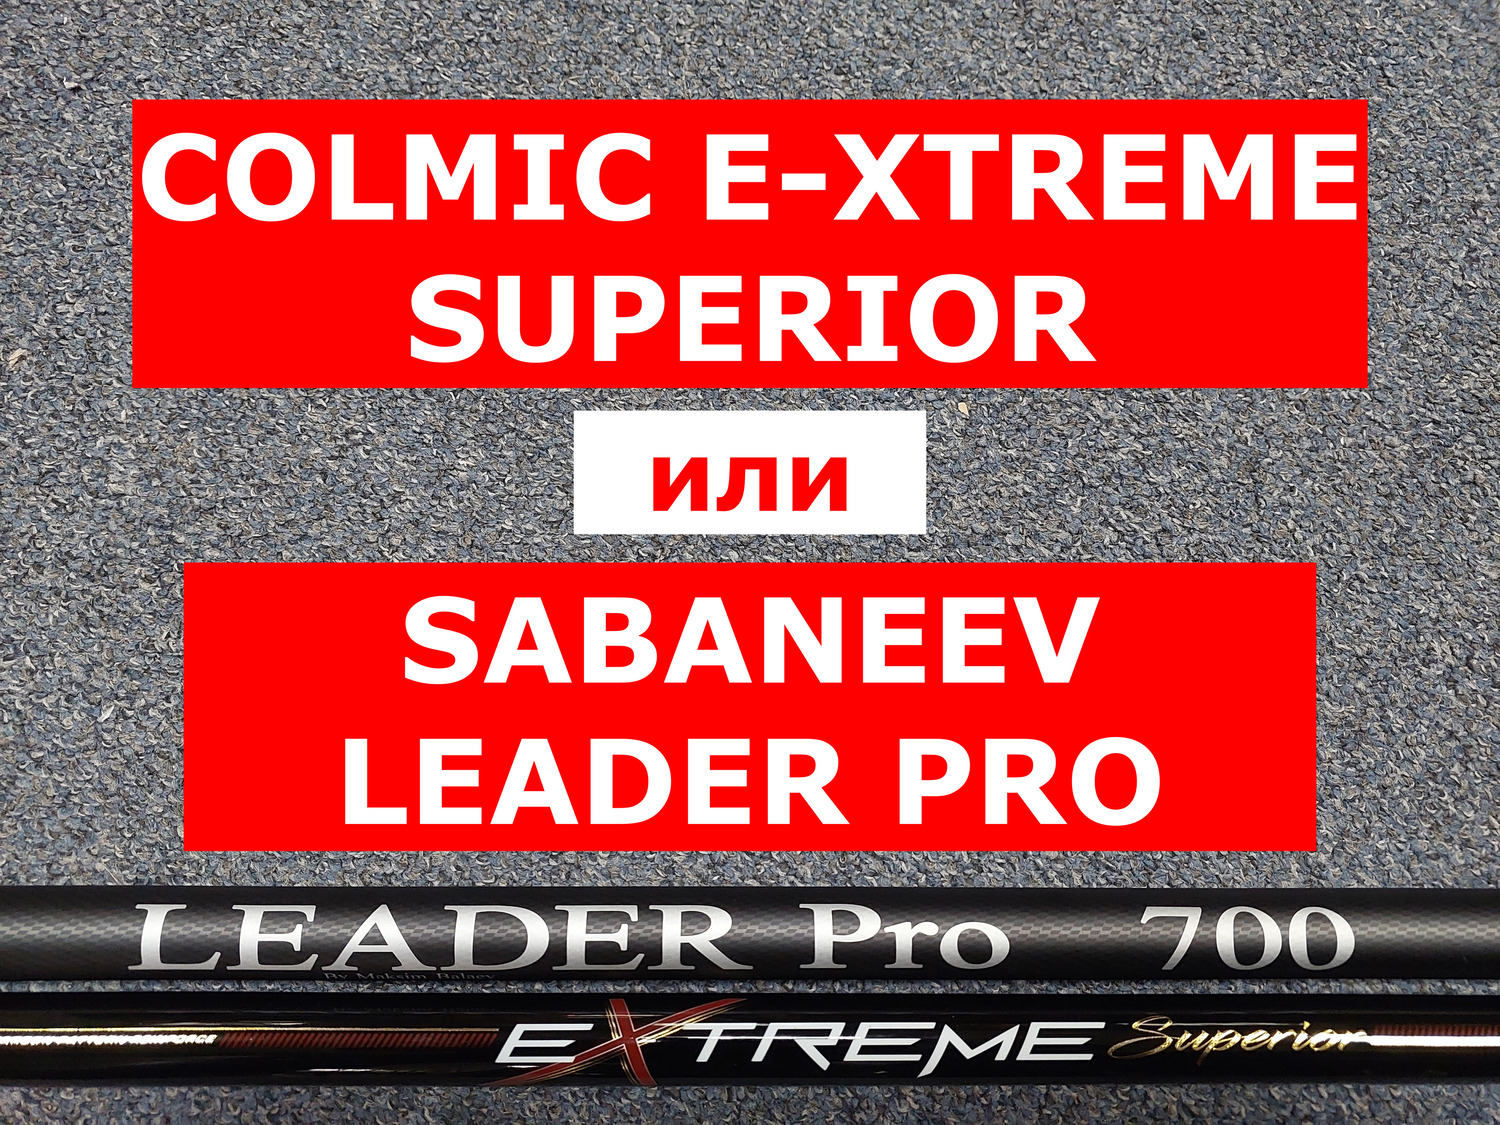 COLMIC E-XTREME SUPERIOR 7м и SABANEEV LEADER PRO 7м | СРАВНИВАЕМ СОВРЕМЕННЫЕ МАХОВЫЕ УДИЛИЩА